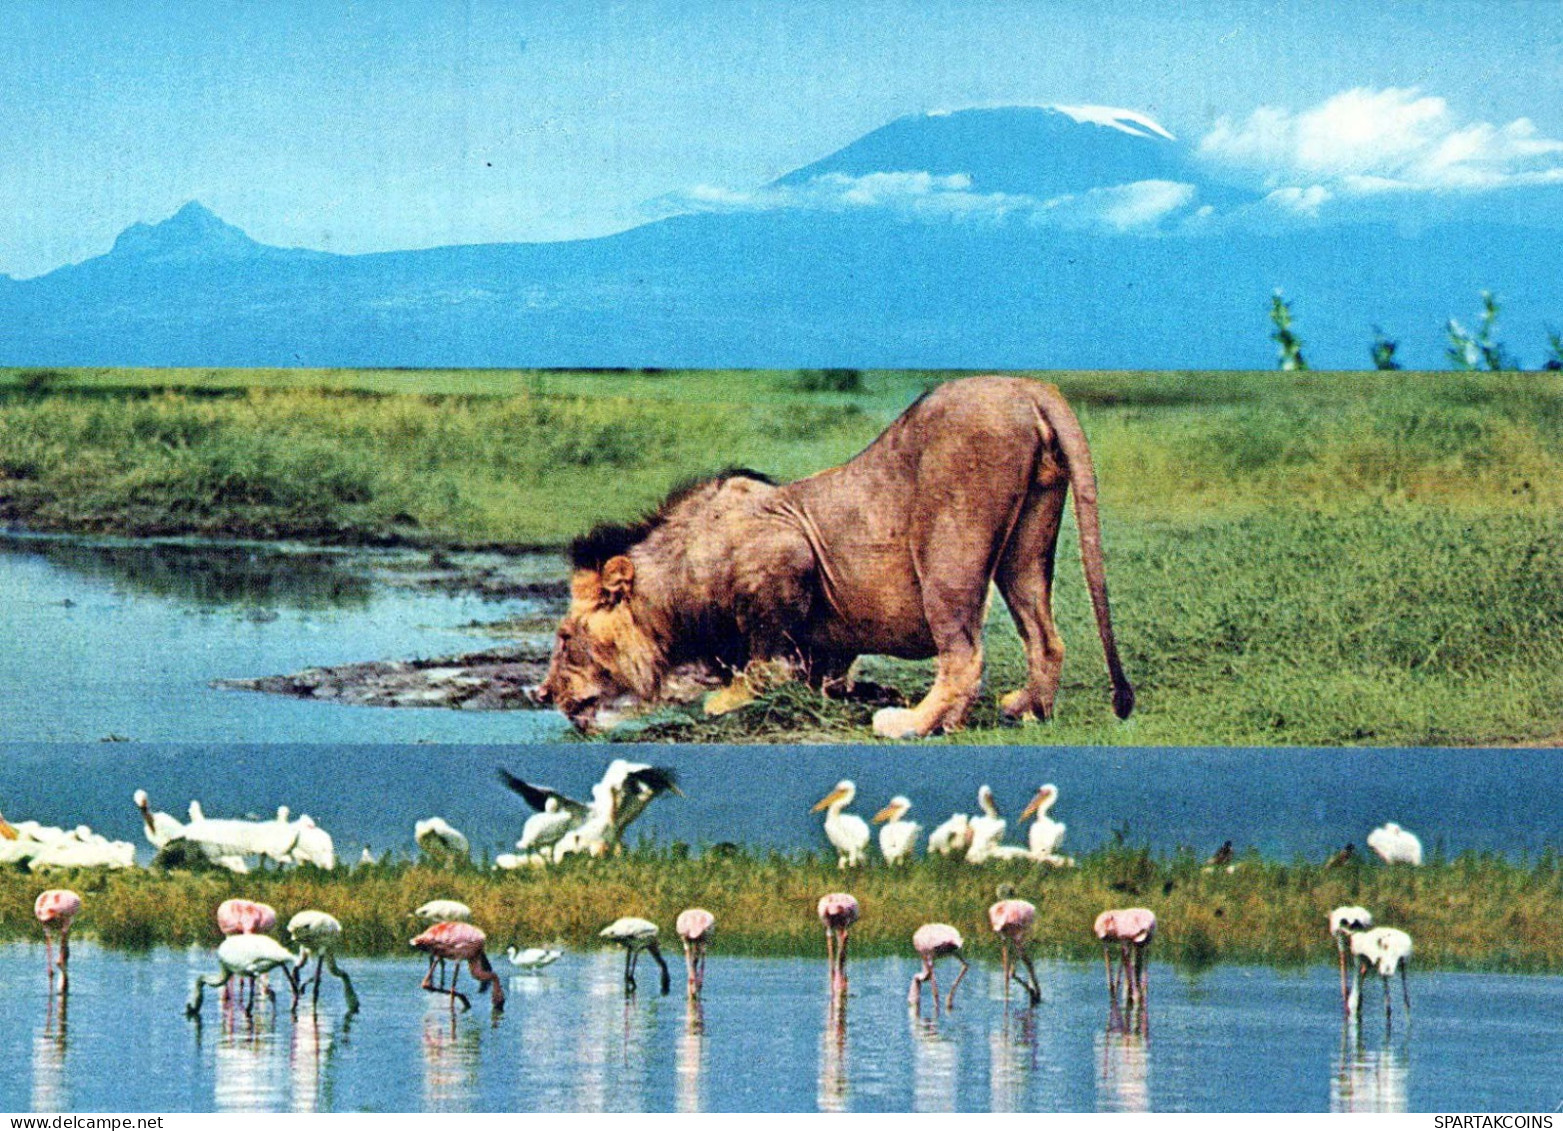 LION Animals Vintage Postcard CPSM #PBS069.GB - Leeuwen